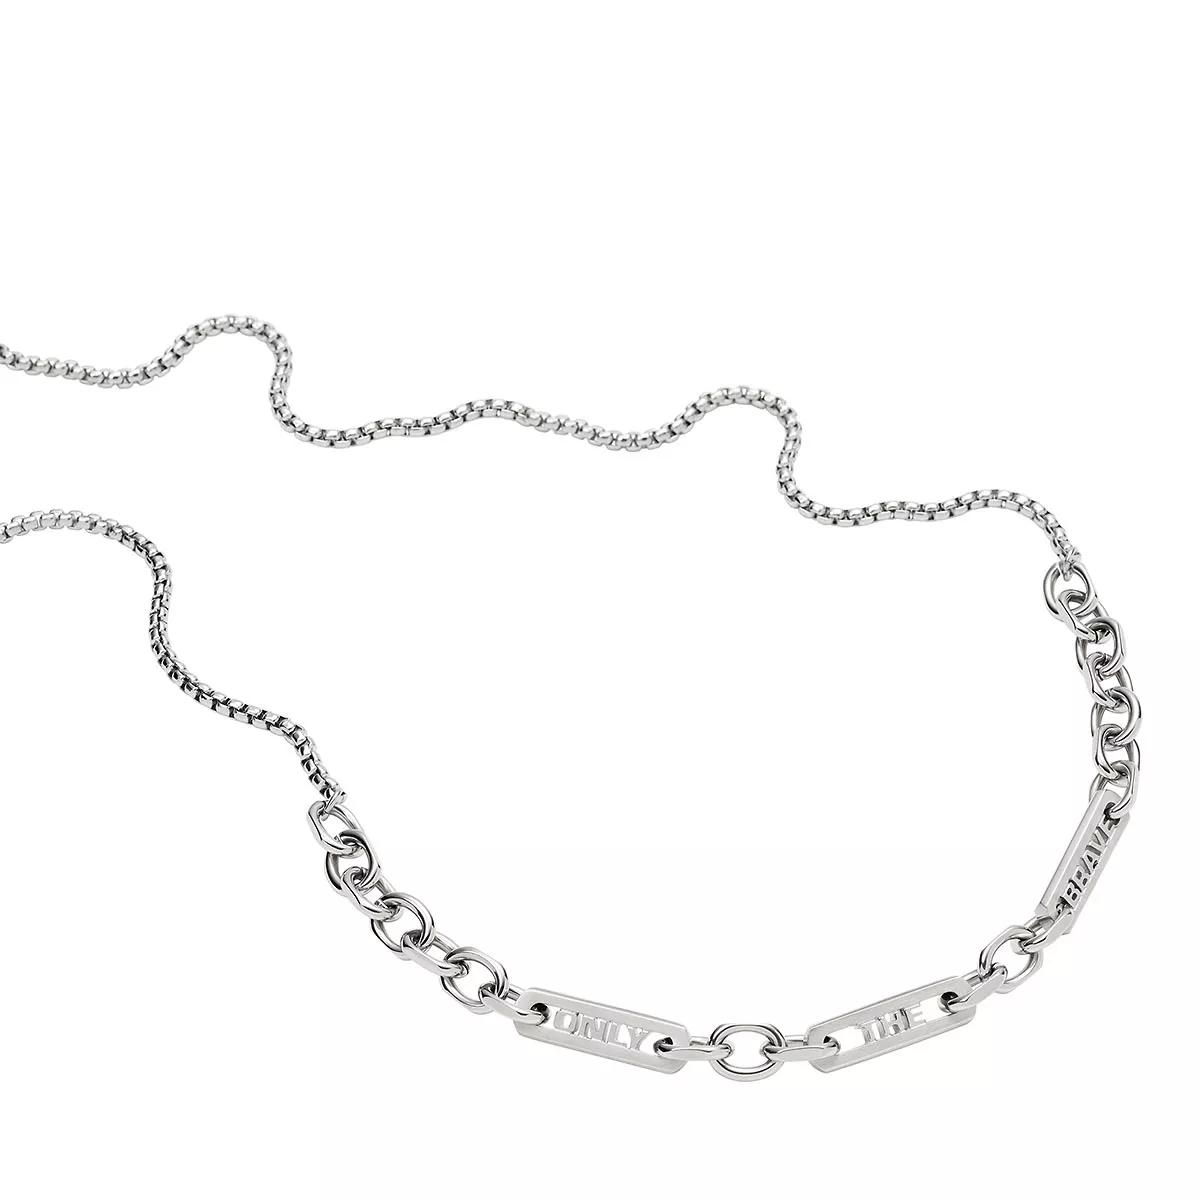 Silver Diesel Chain Halskette Stainless | Steel Mittellange Necklace